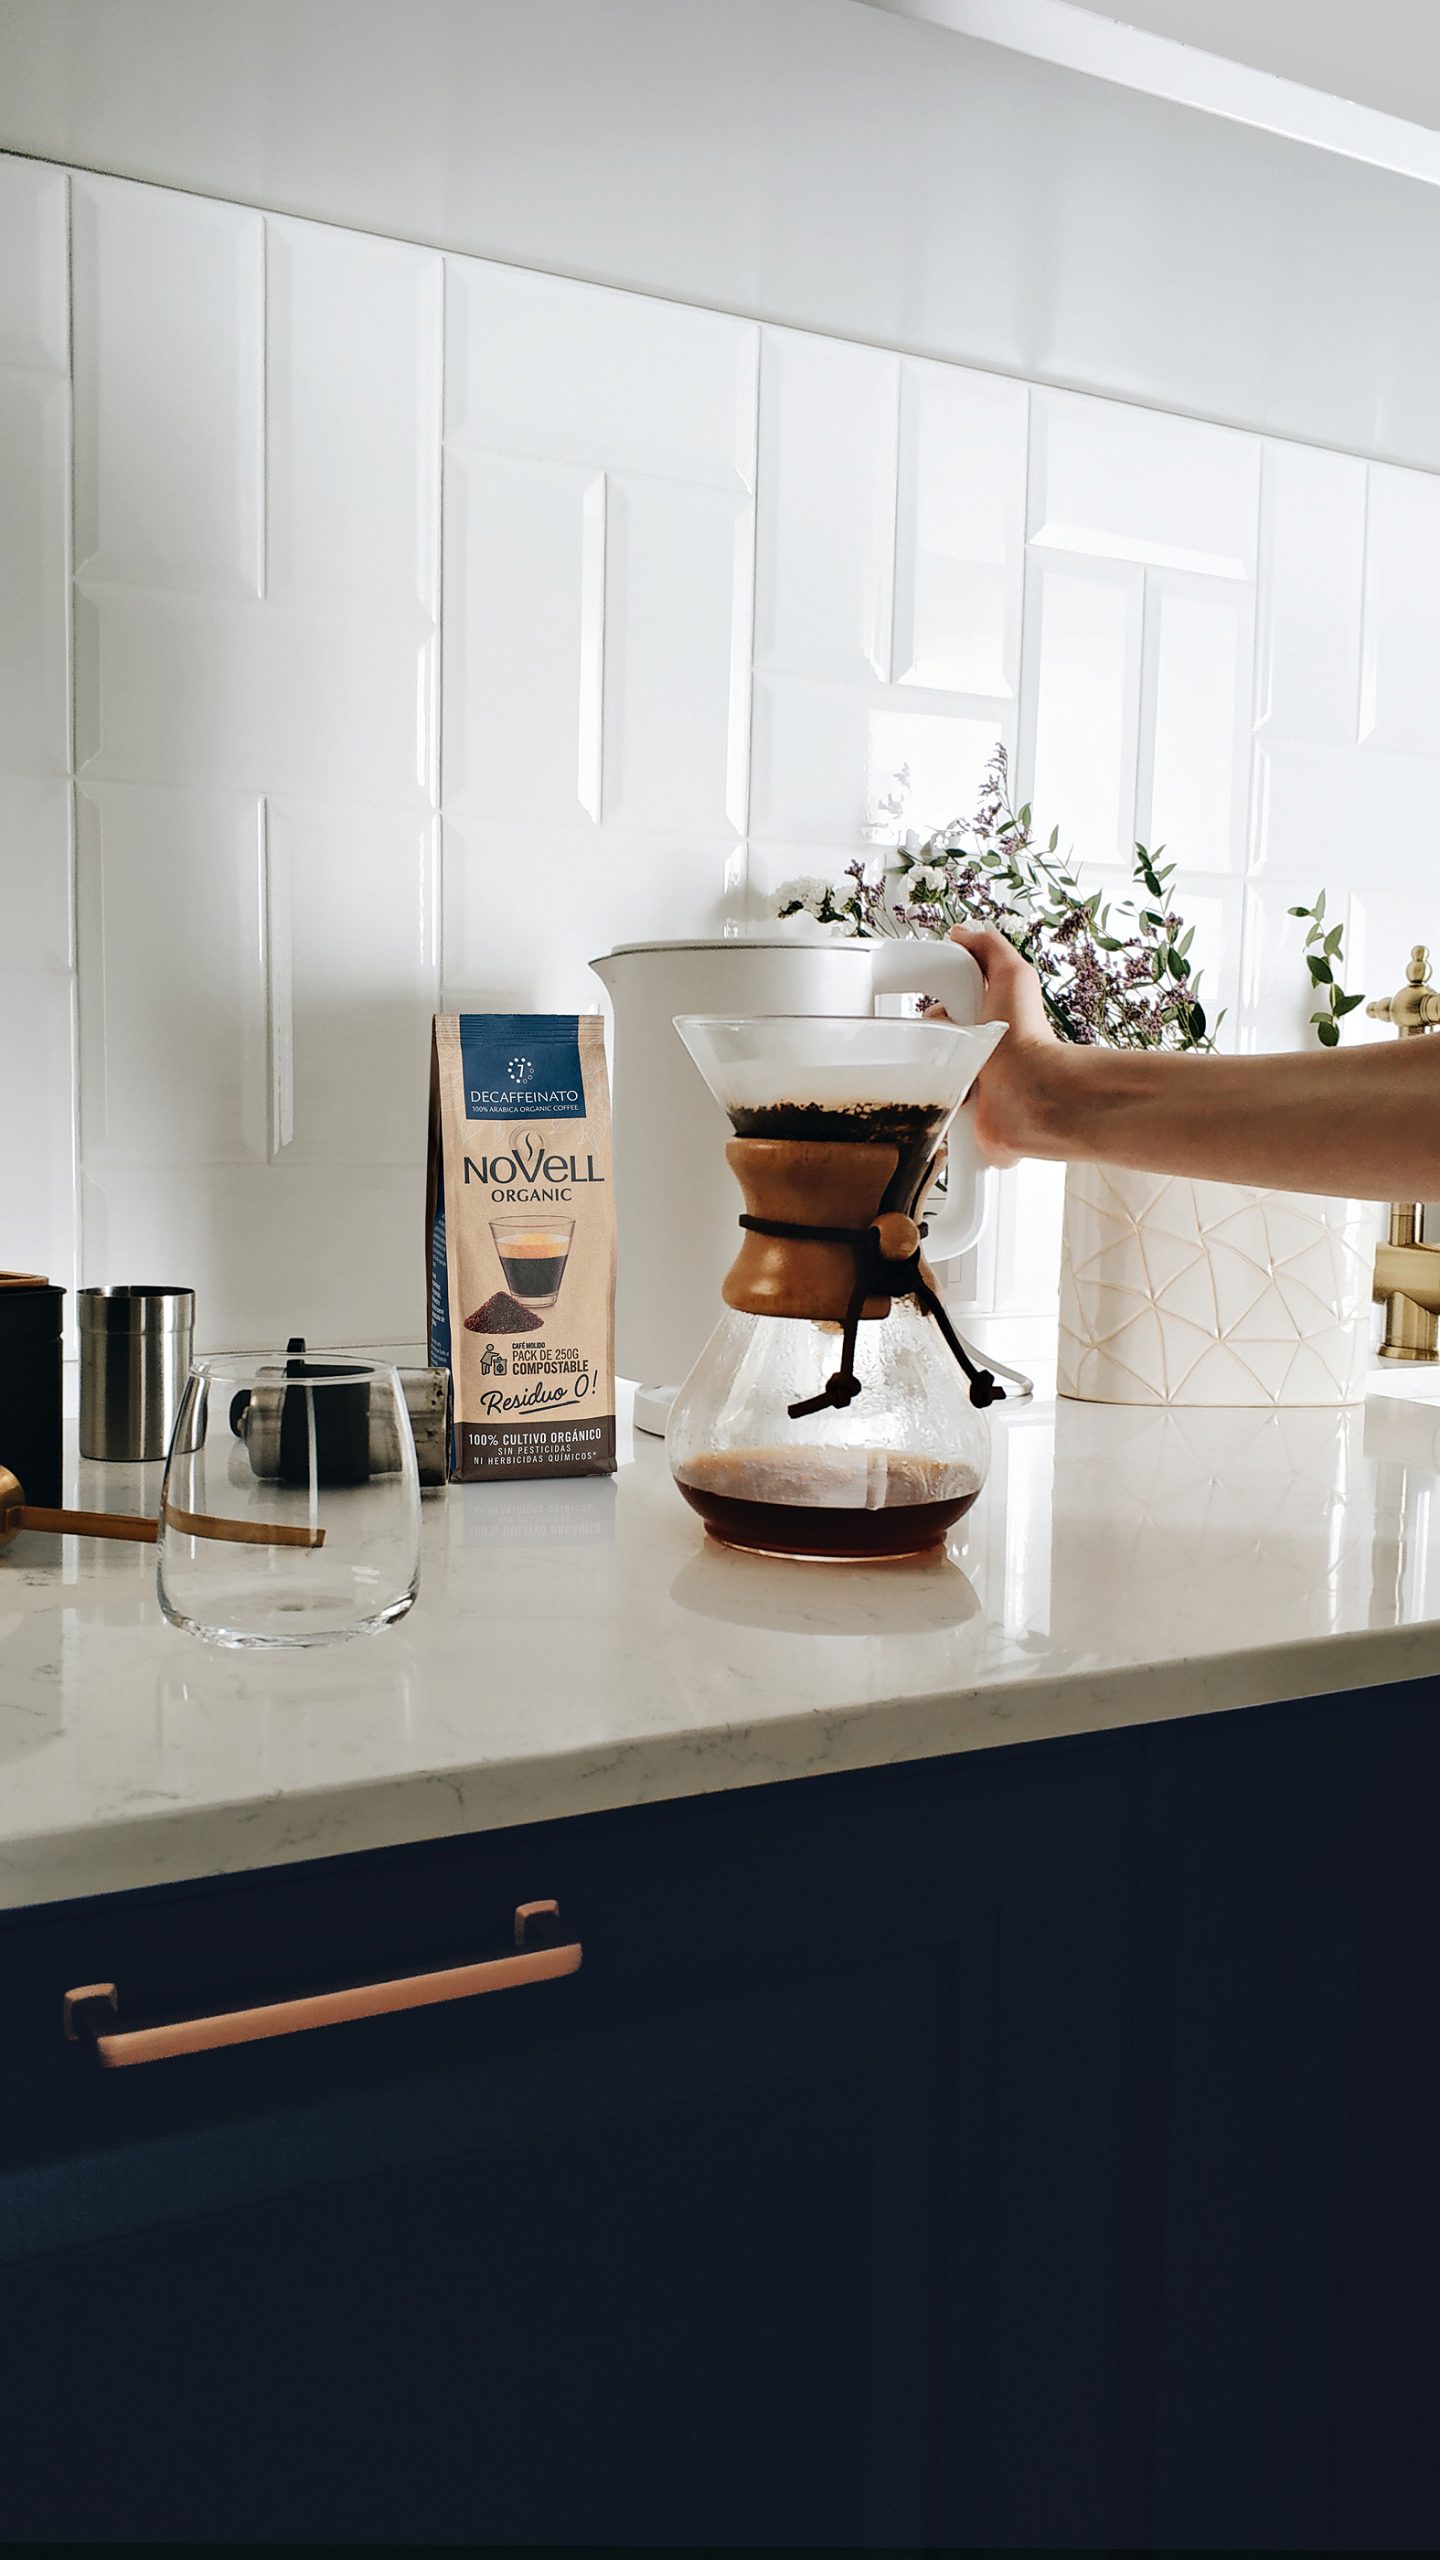 CAFETERA CHEMEX, un método PERFECTO para tu café más delicioso ✨☕